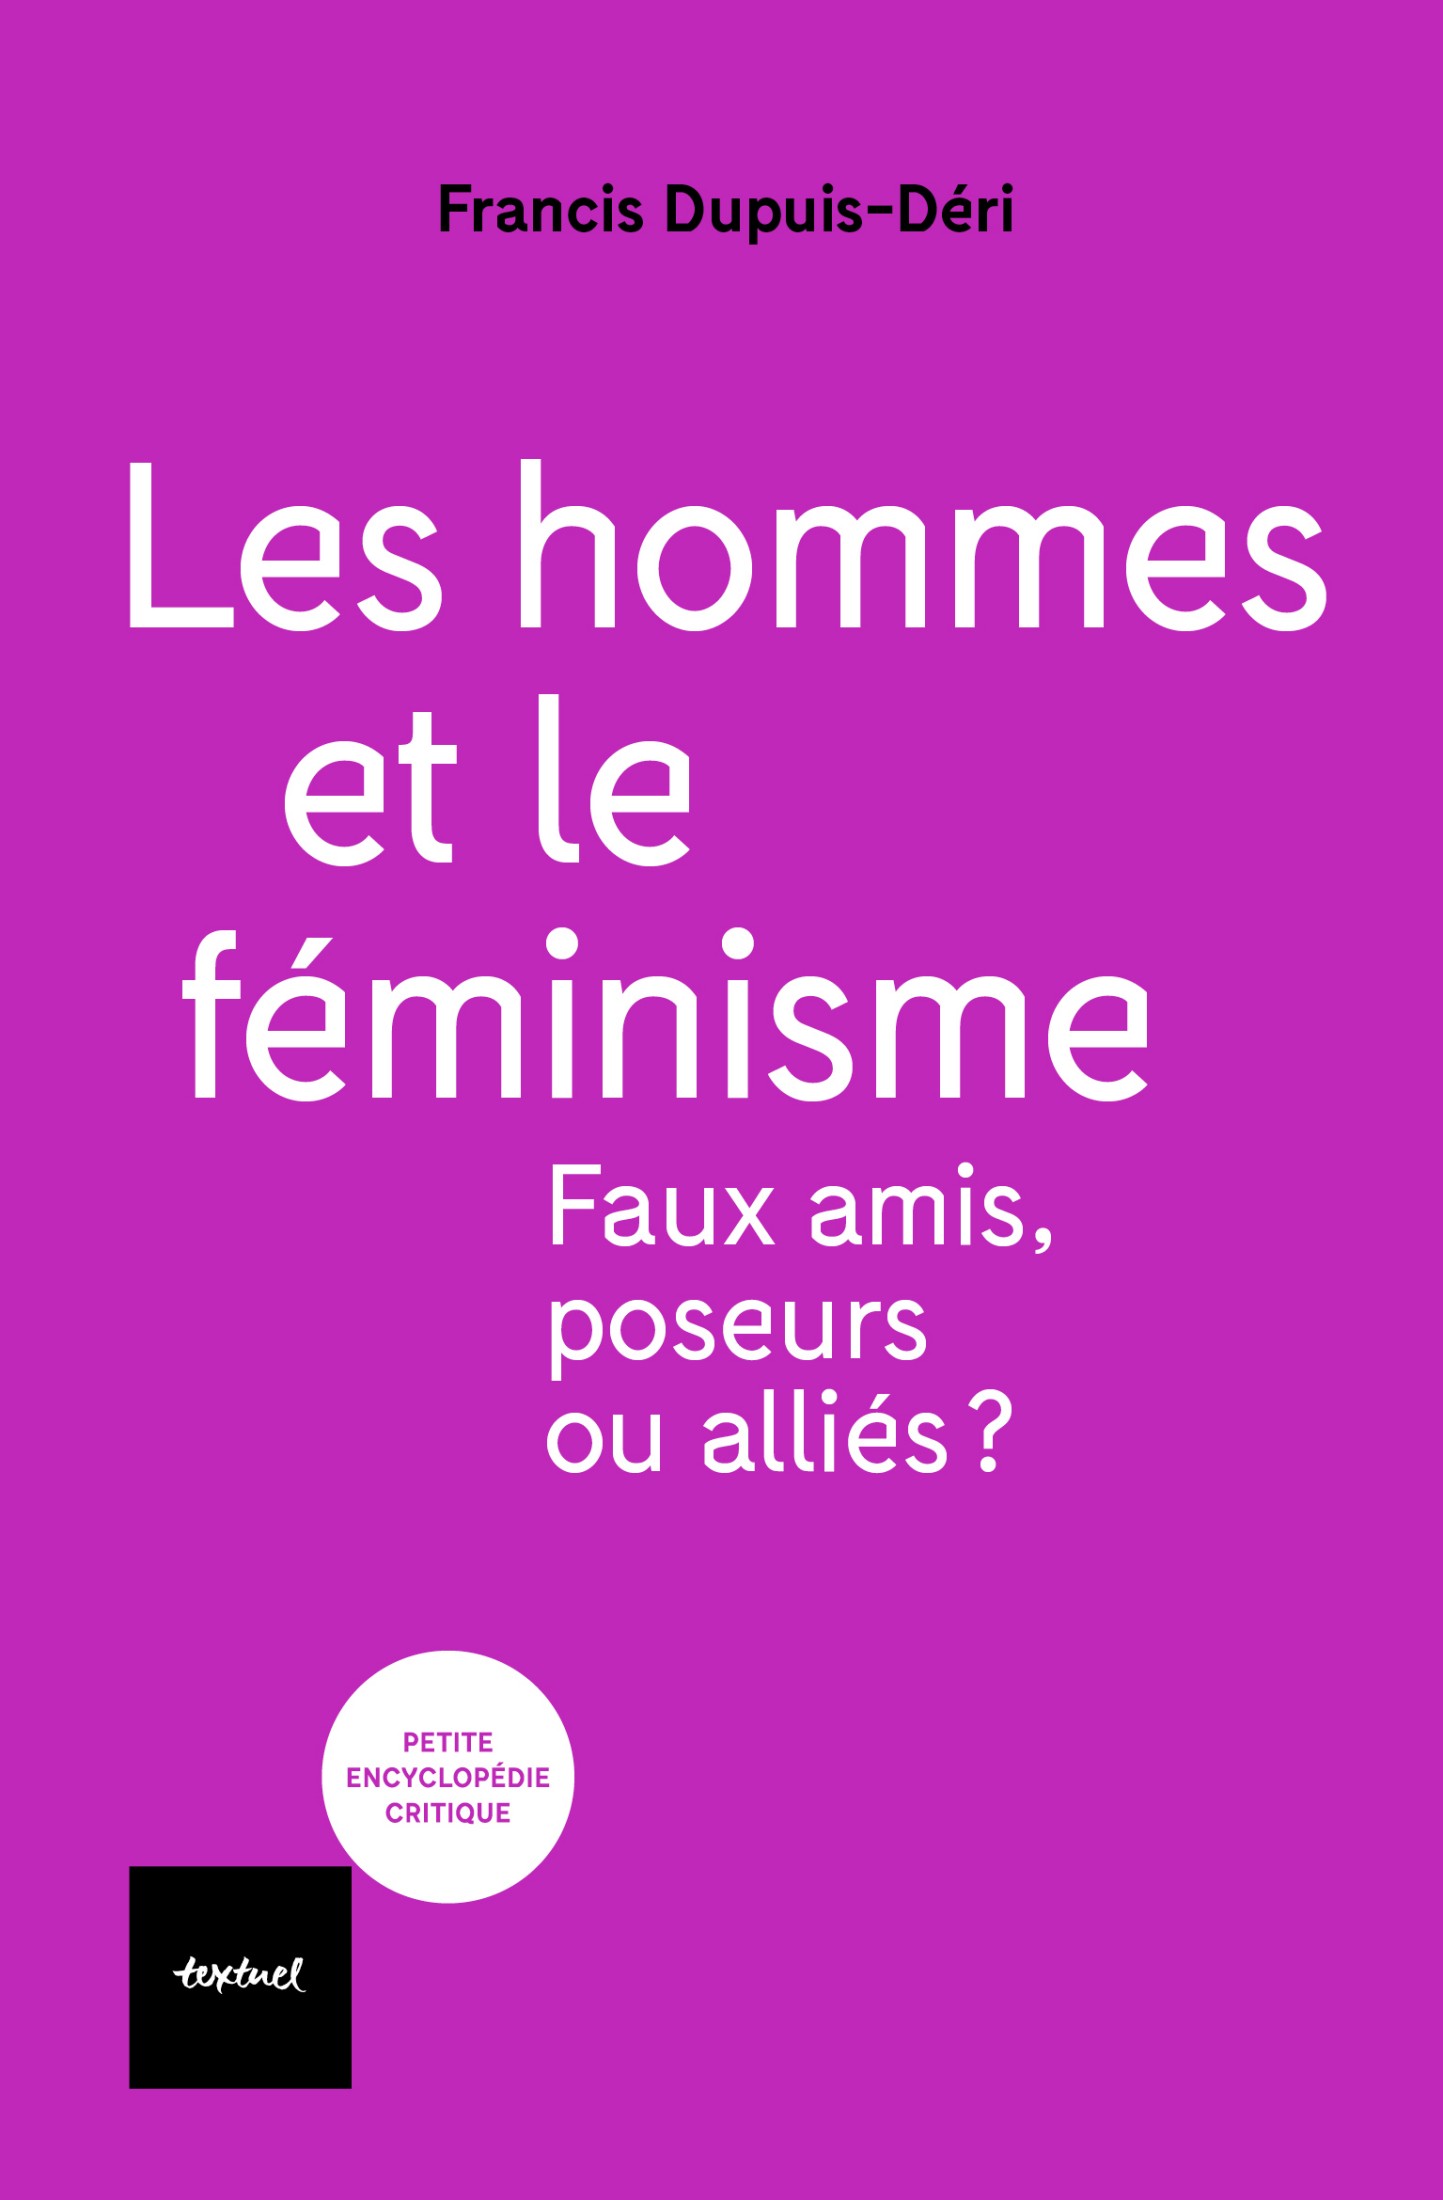 Les hommes et le féminisme (Français language, 2022, Éditions Textuel)